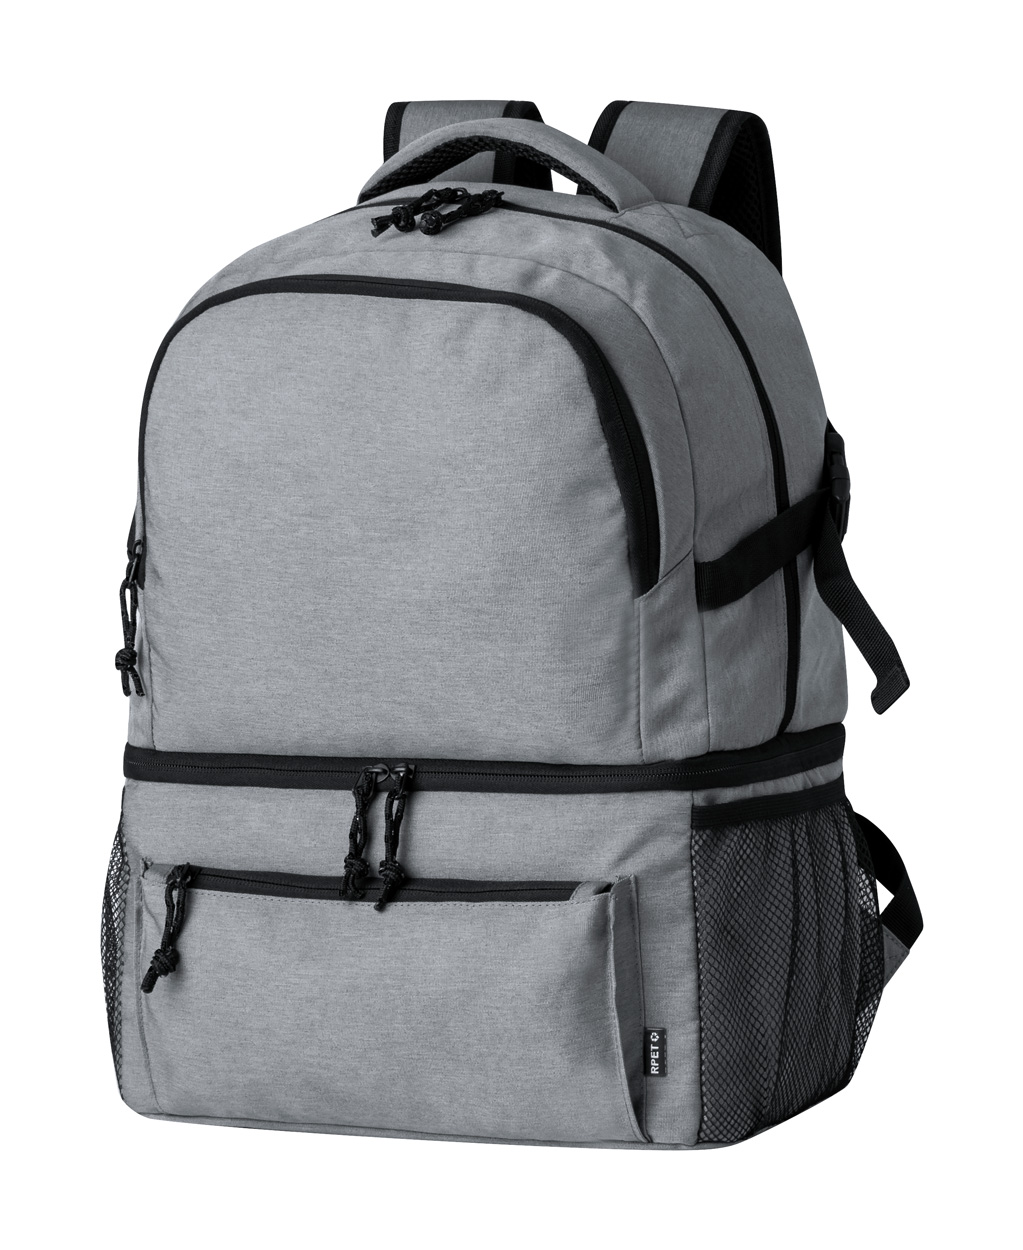 Gaslin RPET cooler backpack - Grau